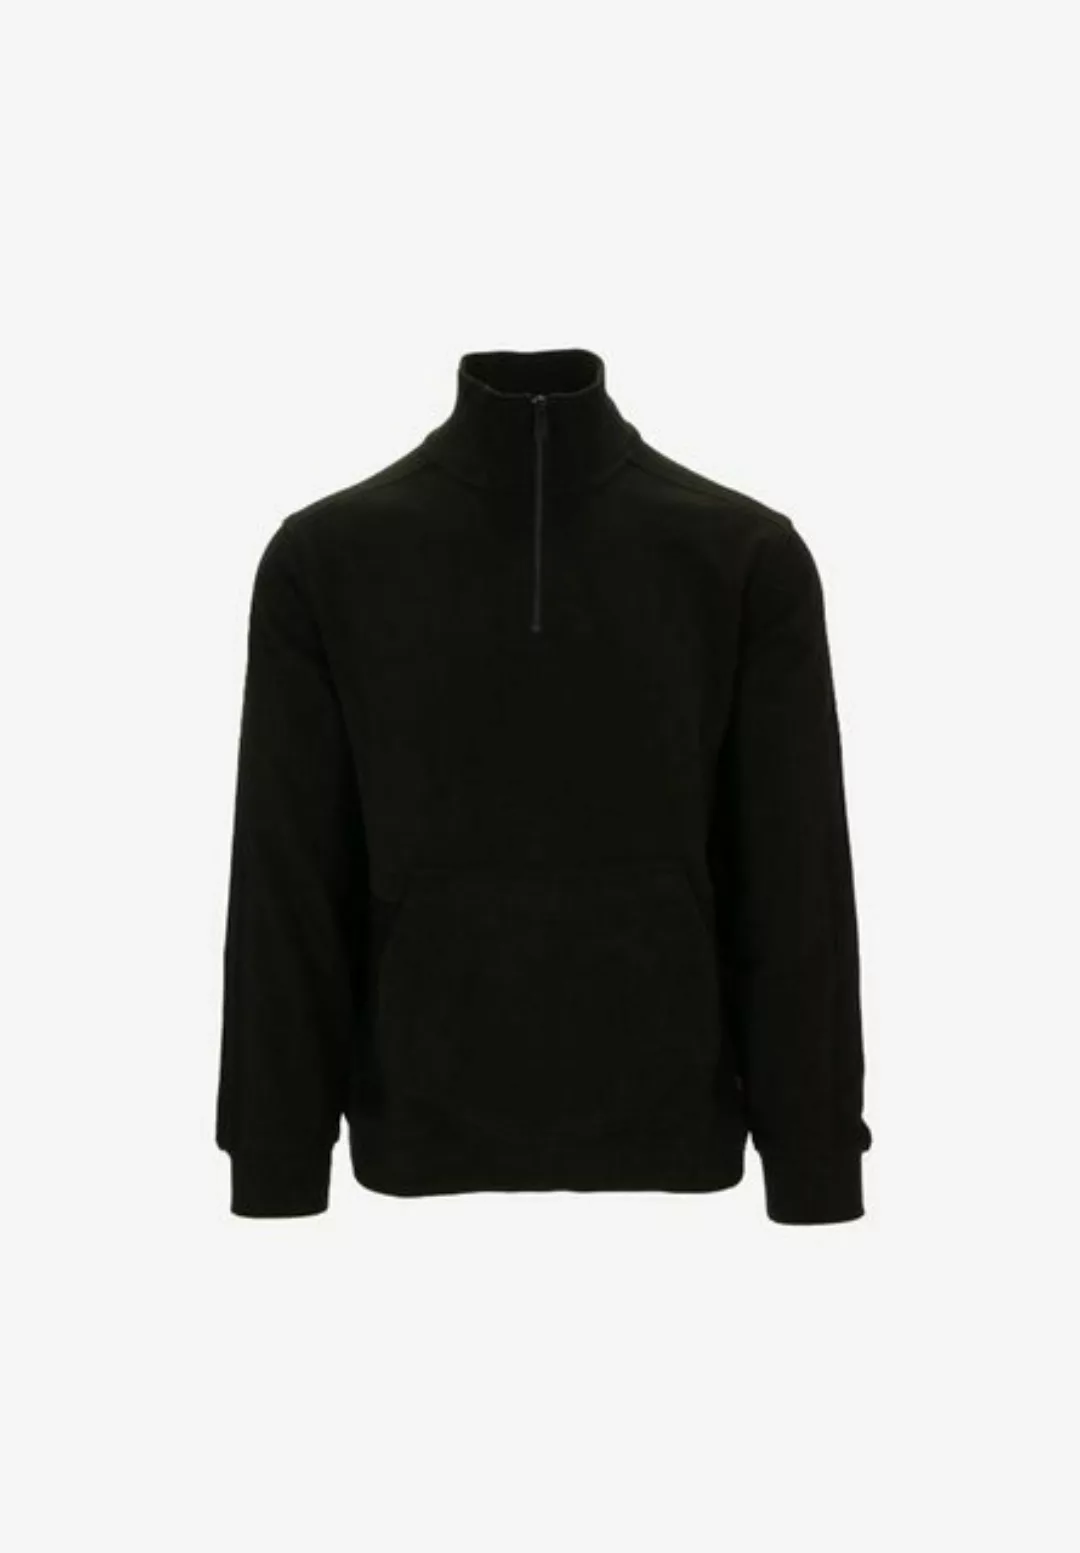 BOSS ORANGE Sweatshirt günstig online kaufen